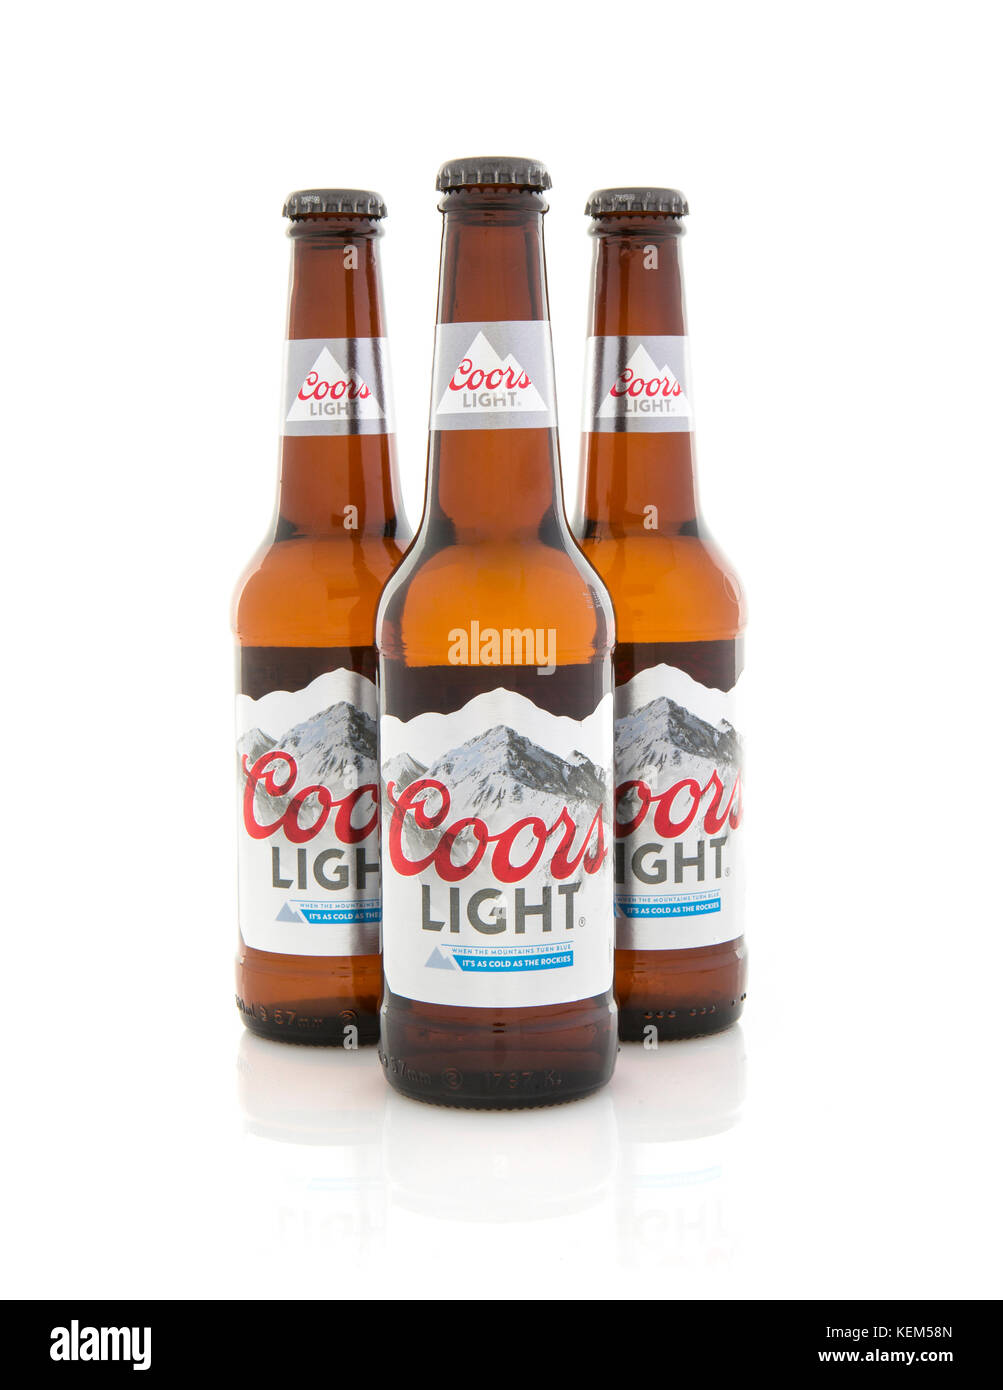 SWINDON, Royaume-Uni - Octobre 22, 2017 : Trois bouteilles de bière Coors Light sur un fond blanc Banque D'Images